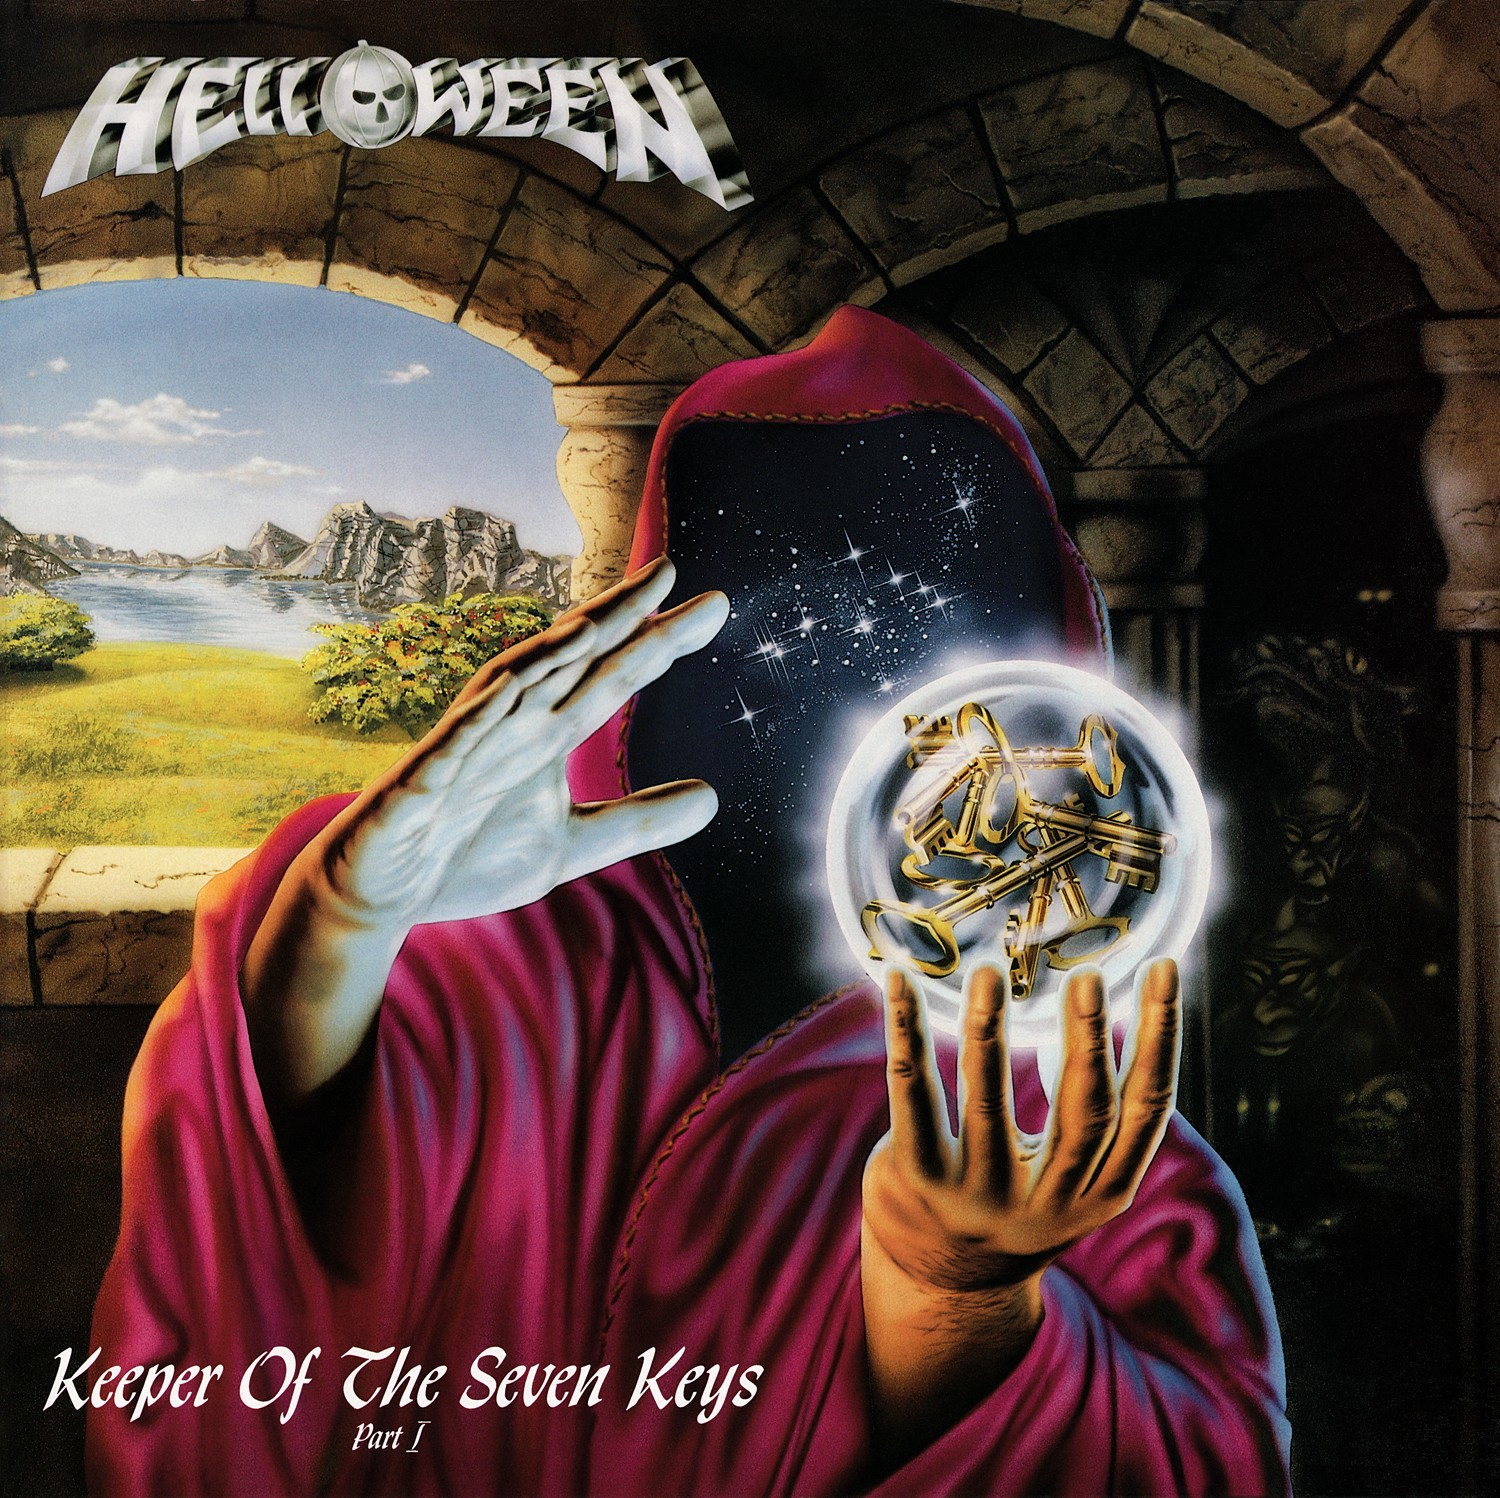 Helloween - Keeper of the Seven Keys Part 1<br /><br />Végy egy tizennyolc éves énekest, egy brutálisan jó neoklasszikus elemekkel gazdagon felvértezett gitárost és alapítsd meg a power metalt, mint stílust. A Helloween megfogadta ezt a receptet, a kétrészes konceptanyag első része pedig azóta is büszkén virít minden rajongó polcán.